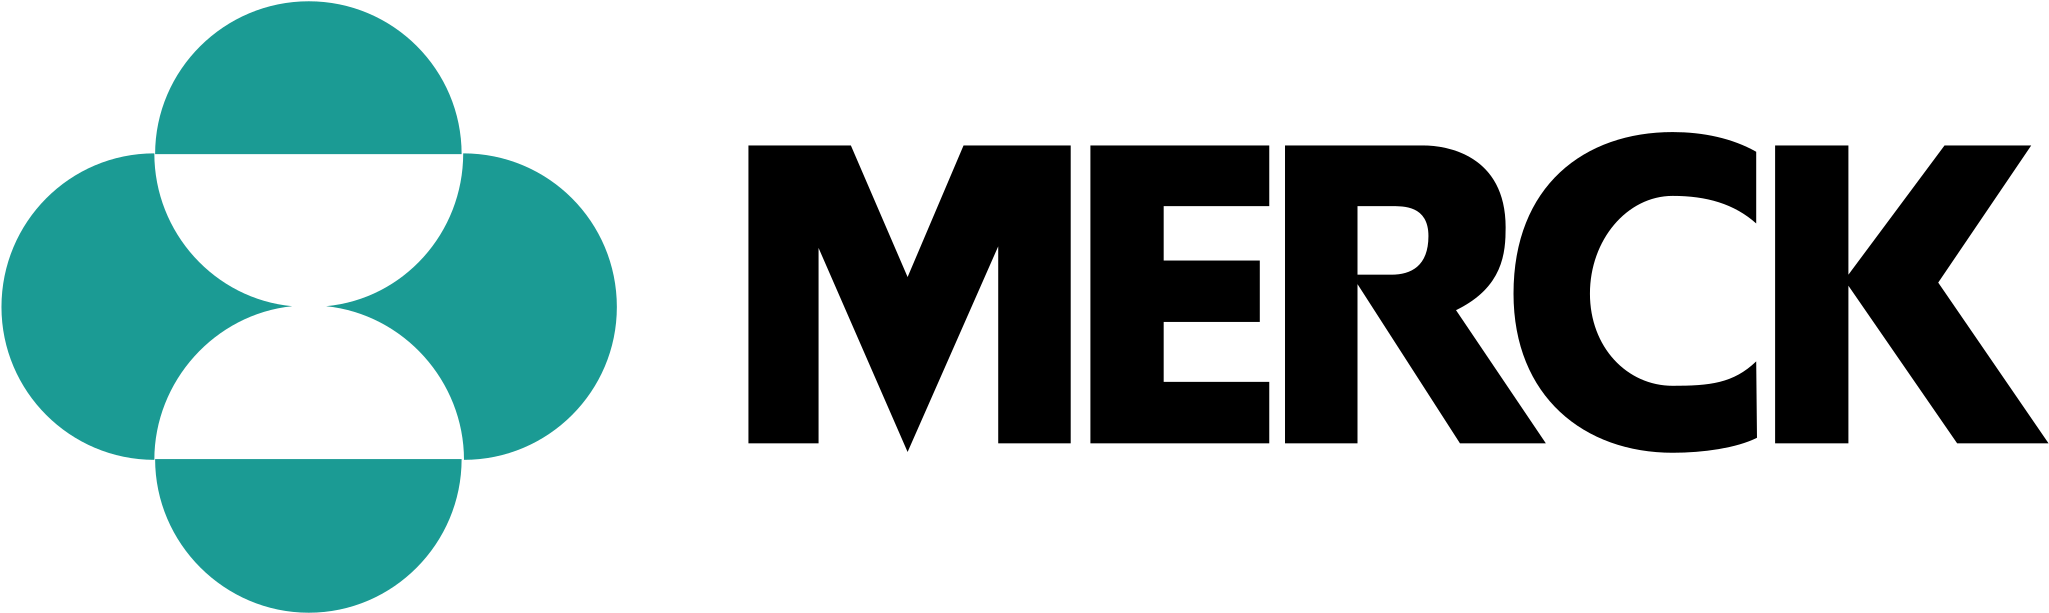 Merck Logo Png Transparent - Merck & Co Clipart (2400x2400), Png Download